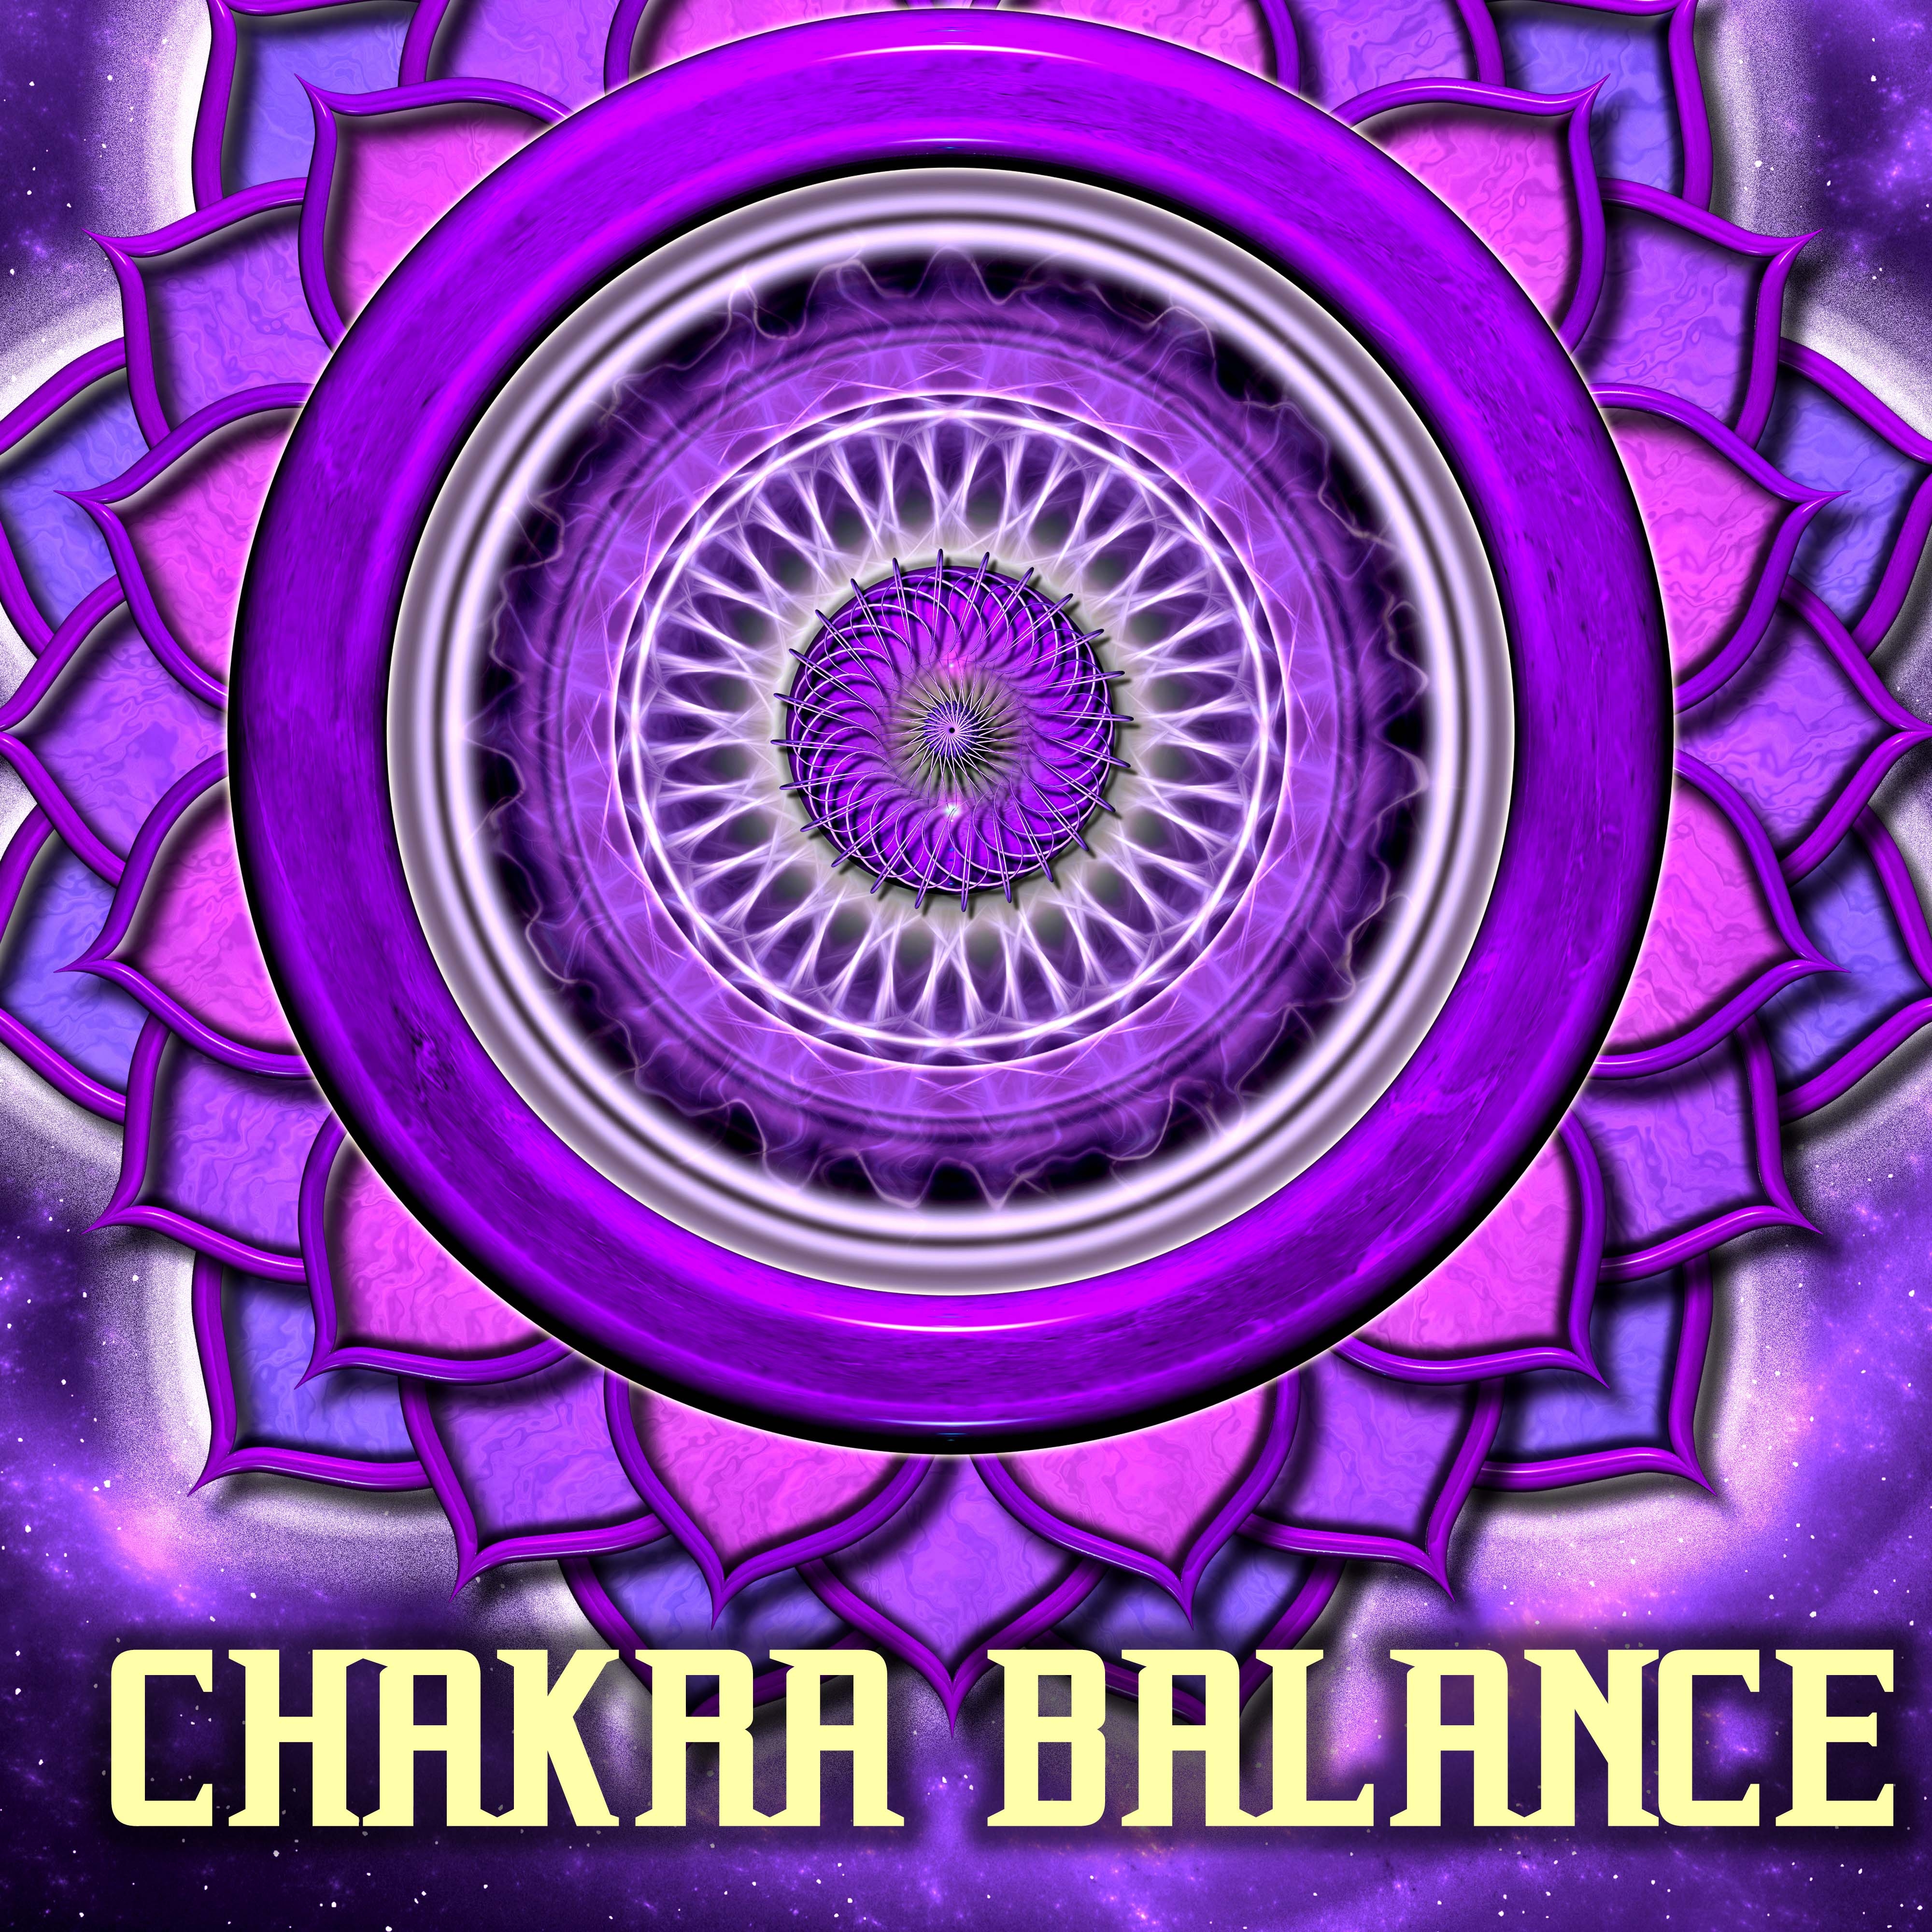 Chakra Balance - Therapeutic Music